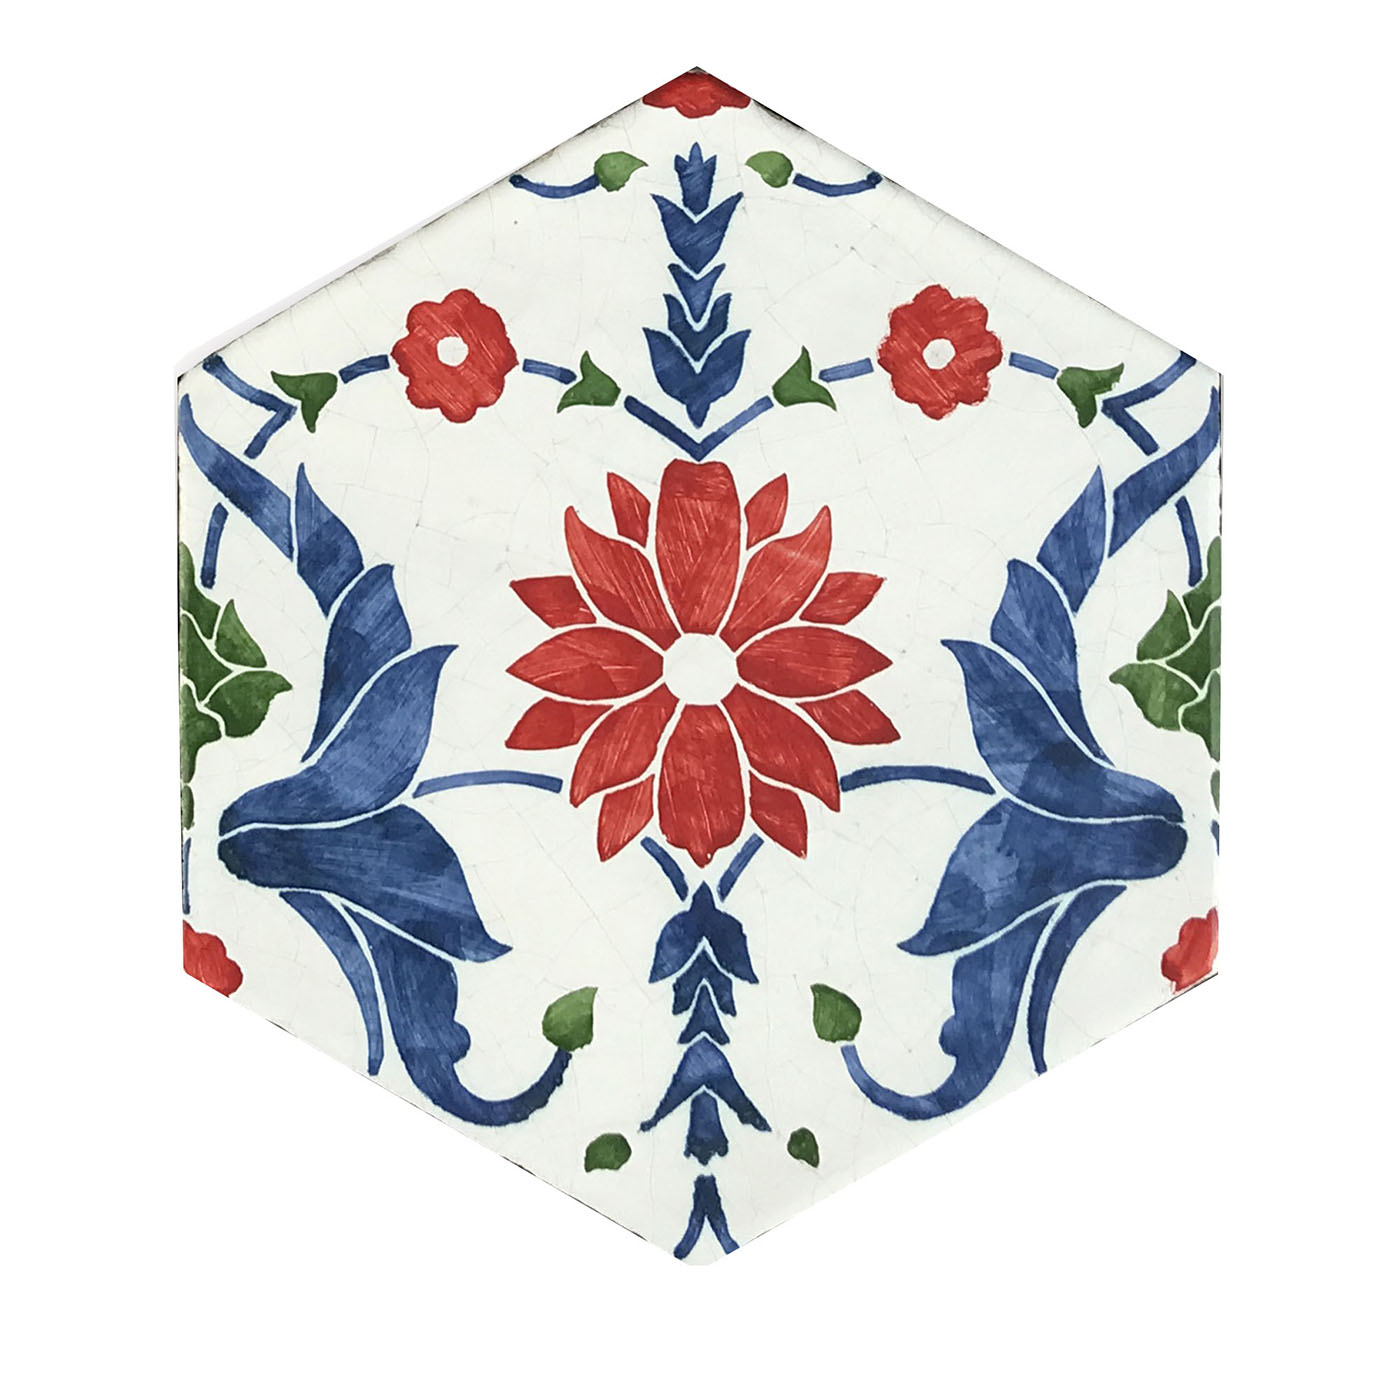 Daamè - Ensemble de 28 carreaux floraux hexagonaux - Vue principale